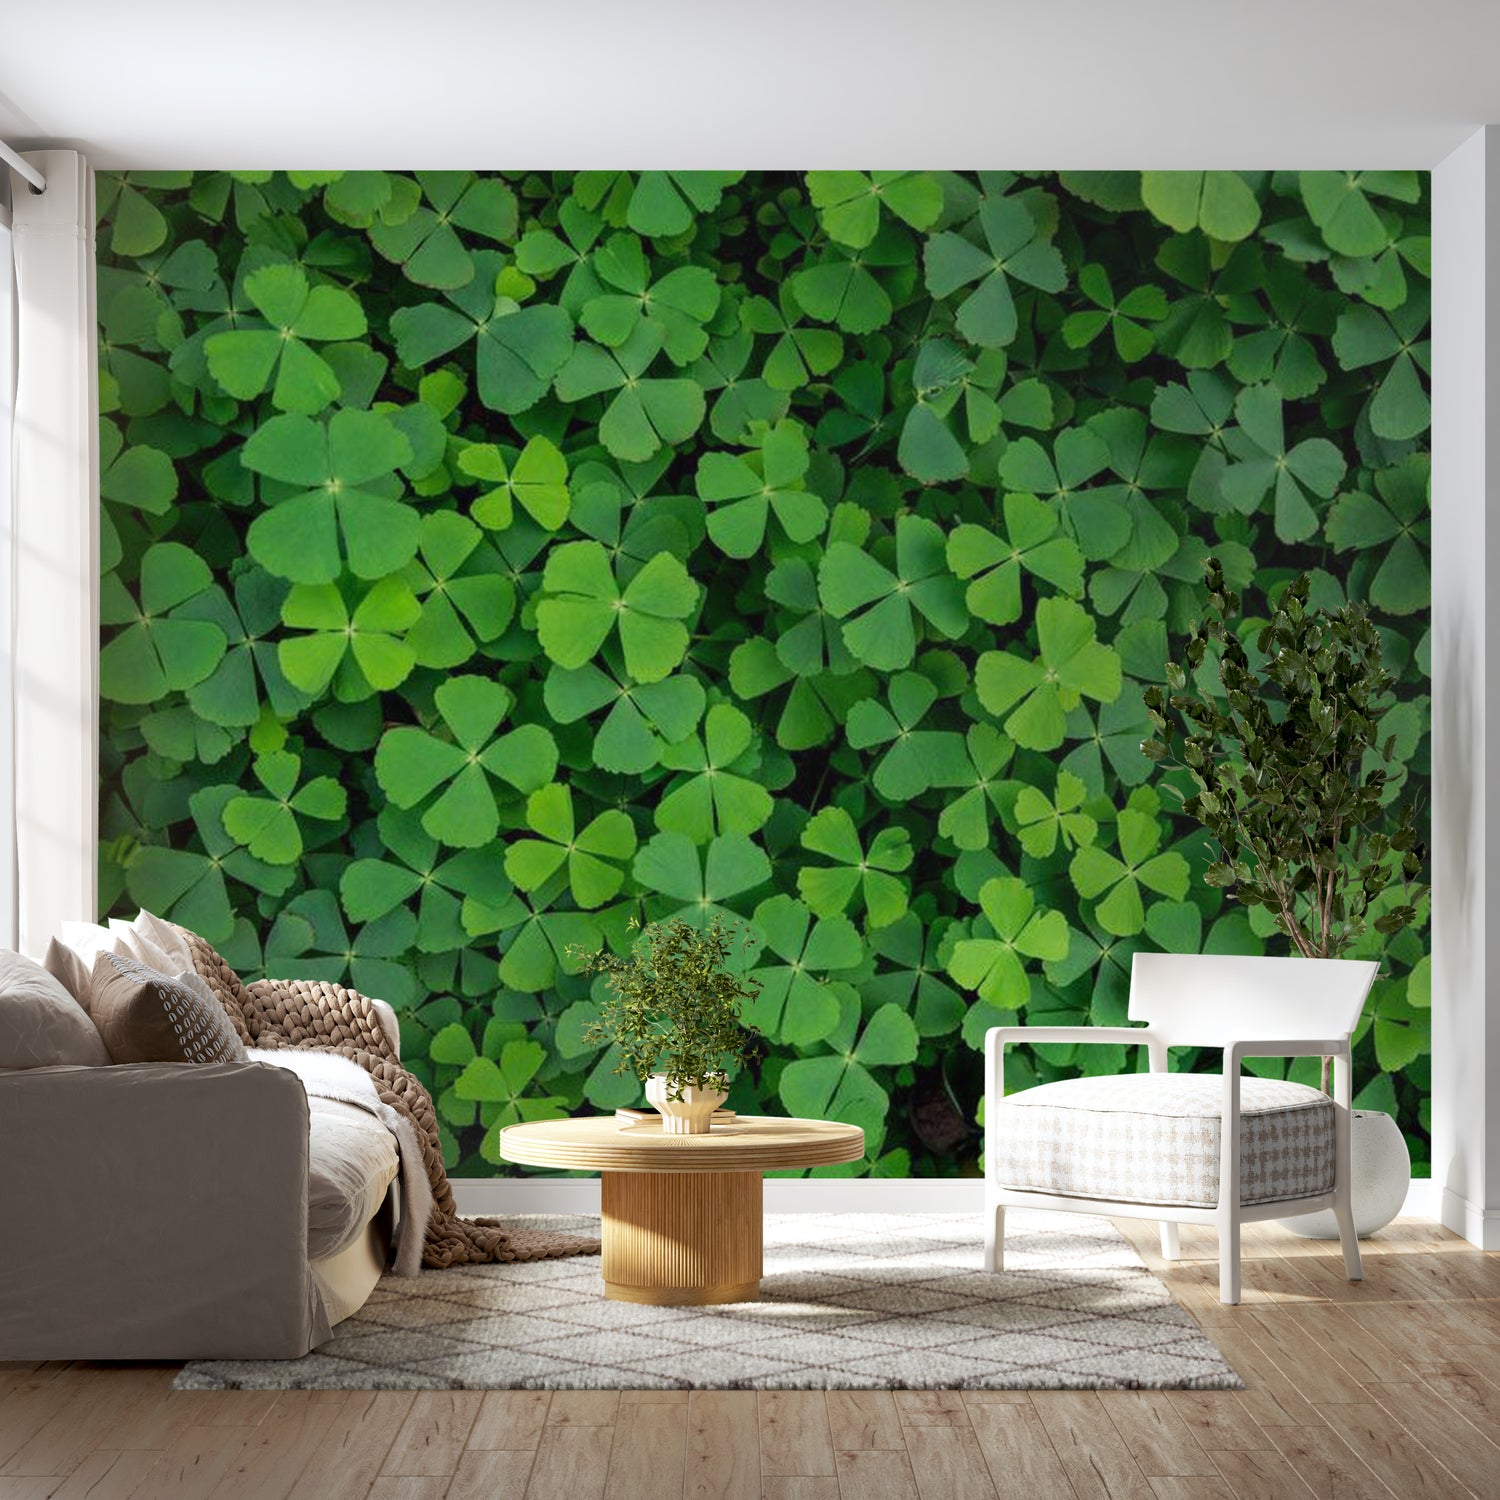 Botanical Wallpaper Wall Mural - Green Clover